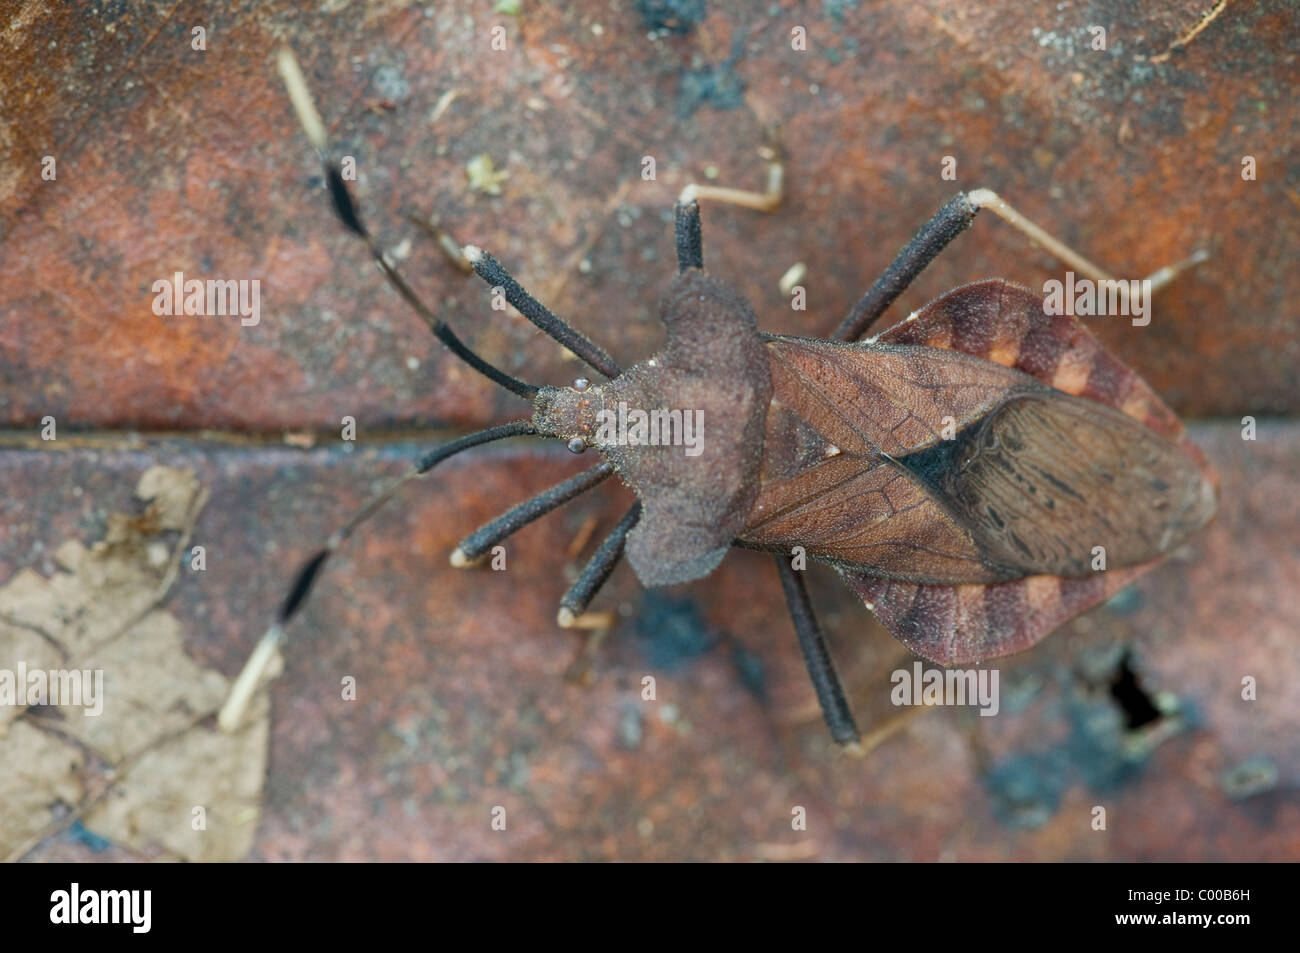 Getarnte Wanze, mimetizzata bug, Tanjung messa Nationalpark, Borneo, Indonesien, Indonesia Foto Stock